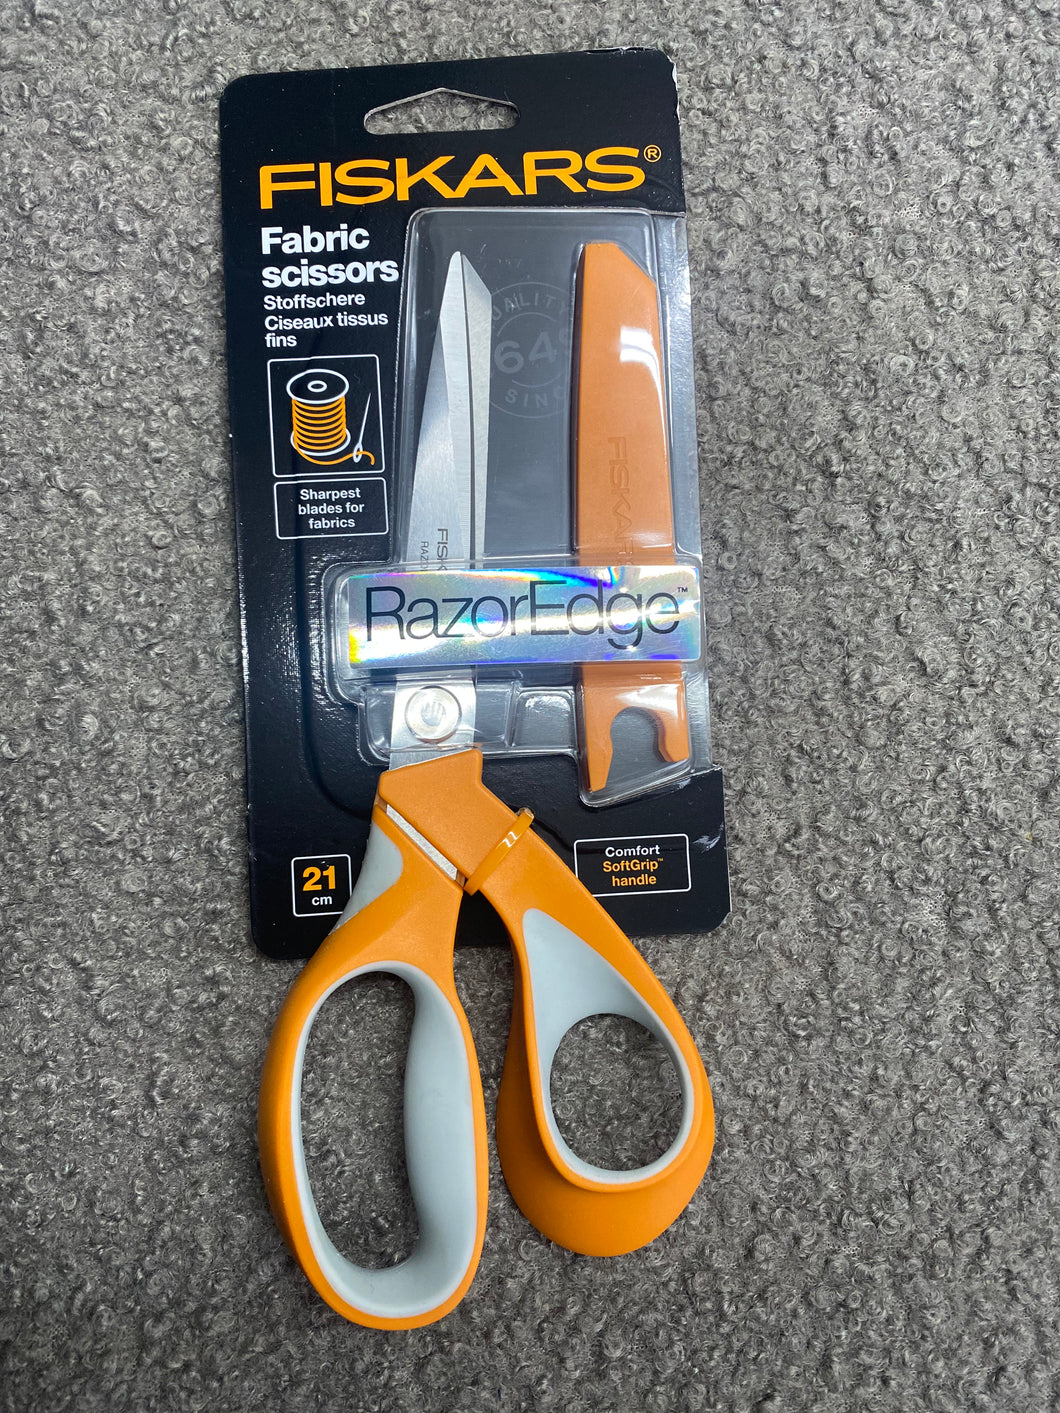 Scissors - Fiskars Soft Grip Fabric